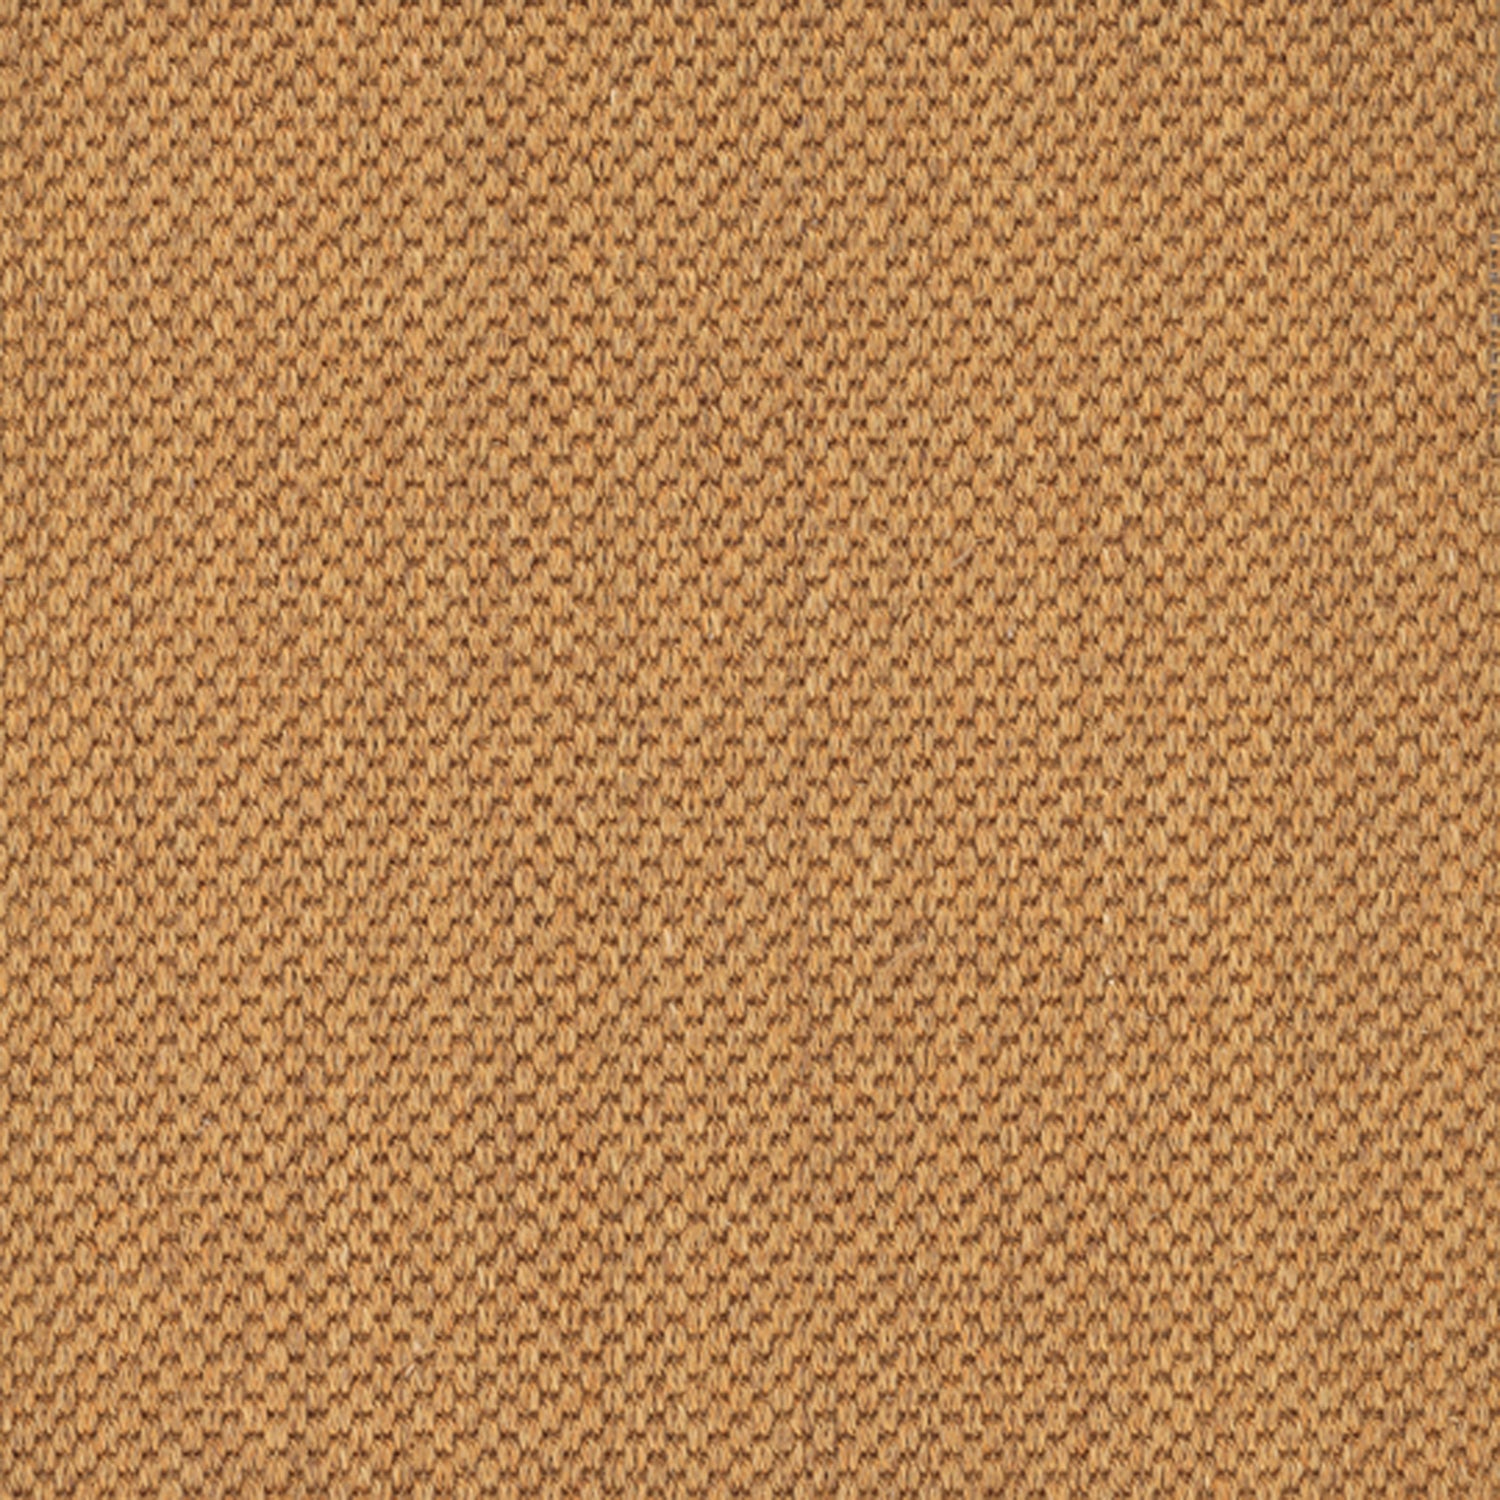 Sisal broadloom carpet swatch in a flat grid weave in "Flint" bronze.